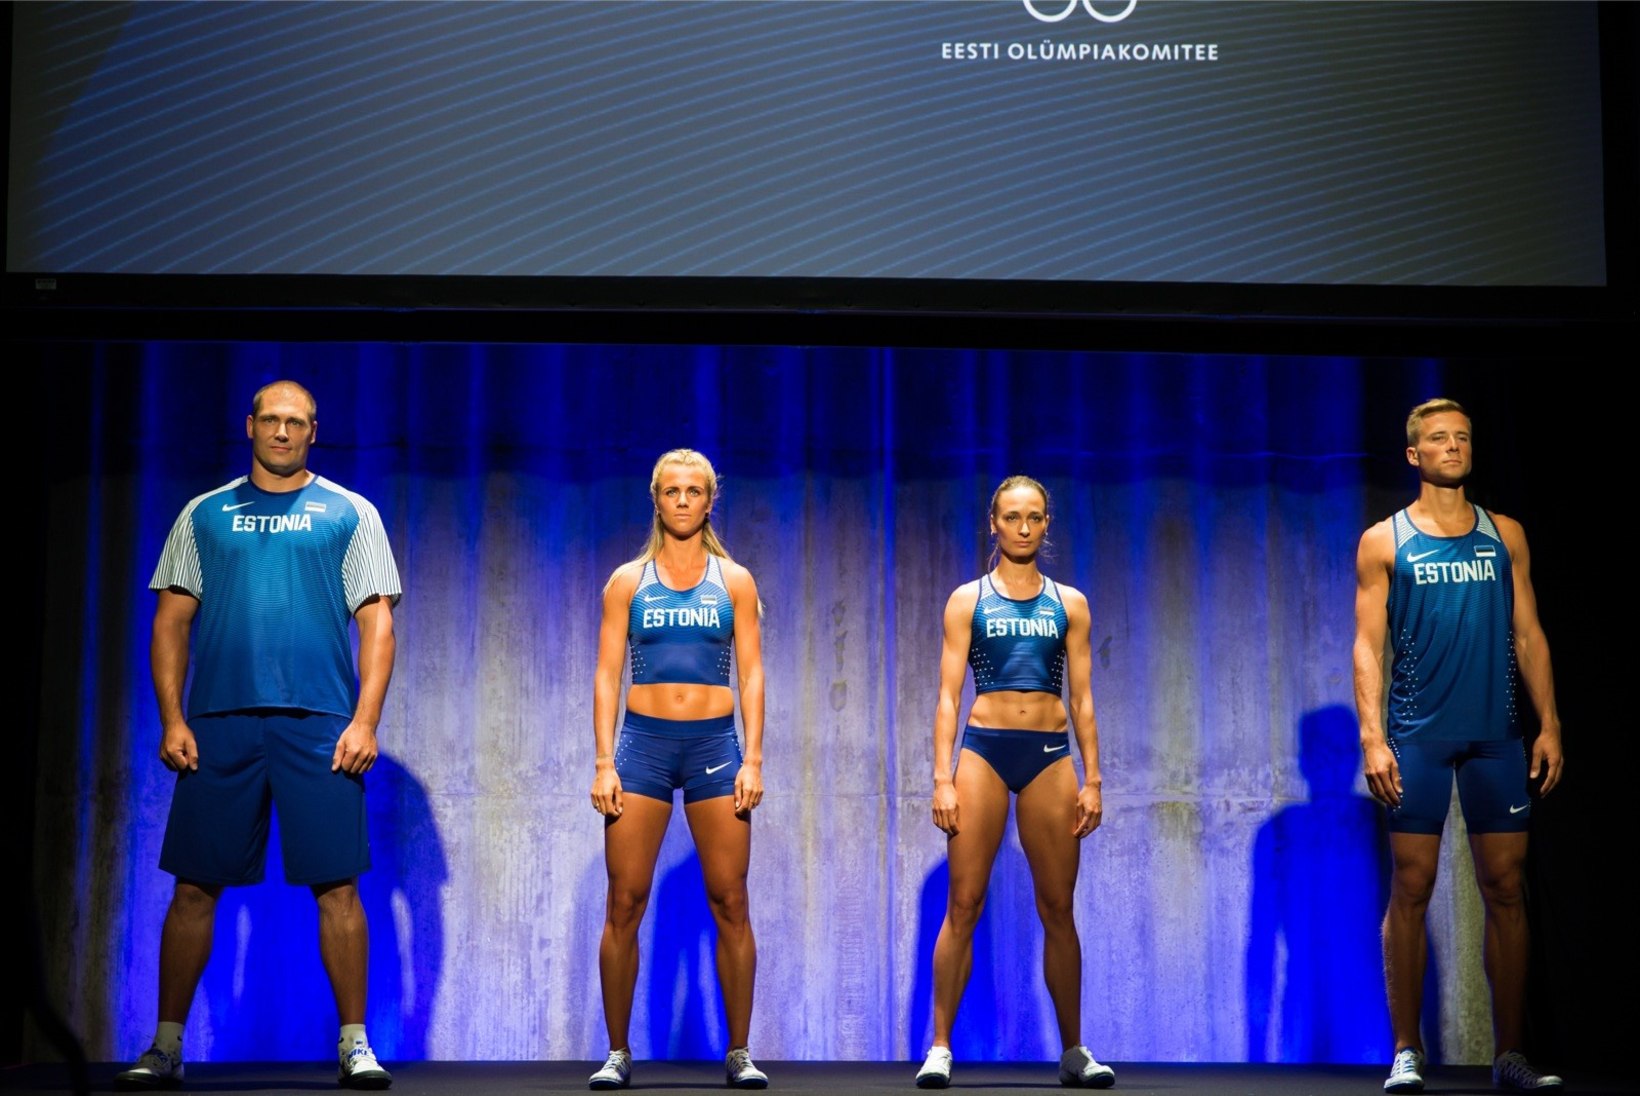 GALERII | Eesti olümpiakoondislaste võistlusvormid toovad sportlaste võimsad lihased tugevalt esile!